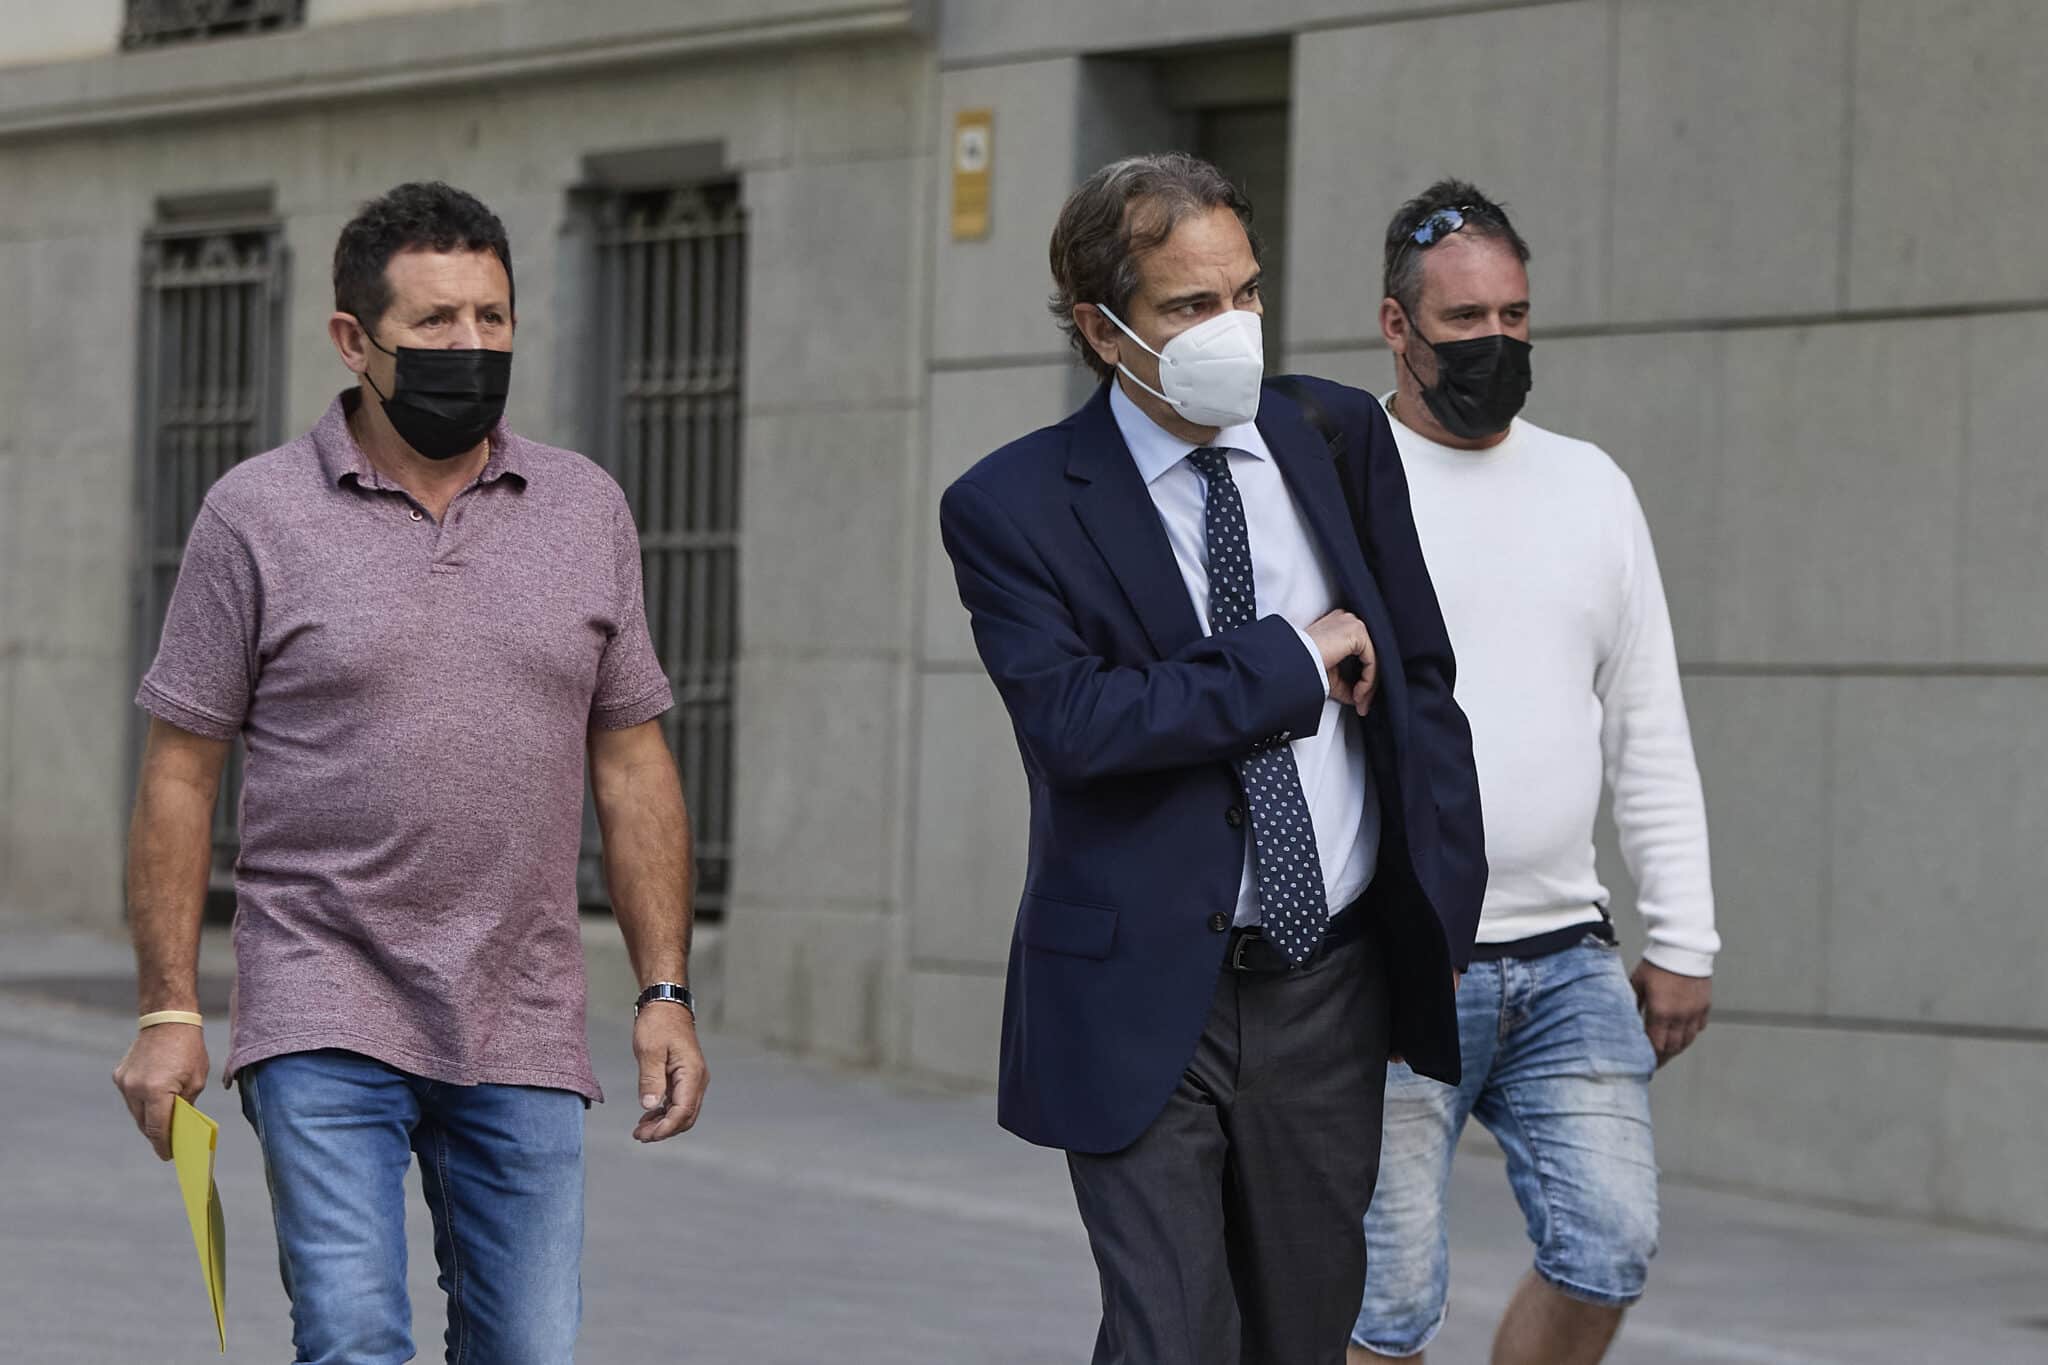 El juez prohíbe salir de España al patrón del Villa de Pitanxo